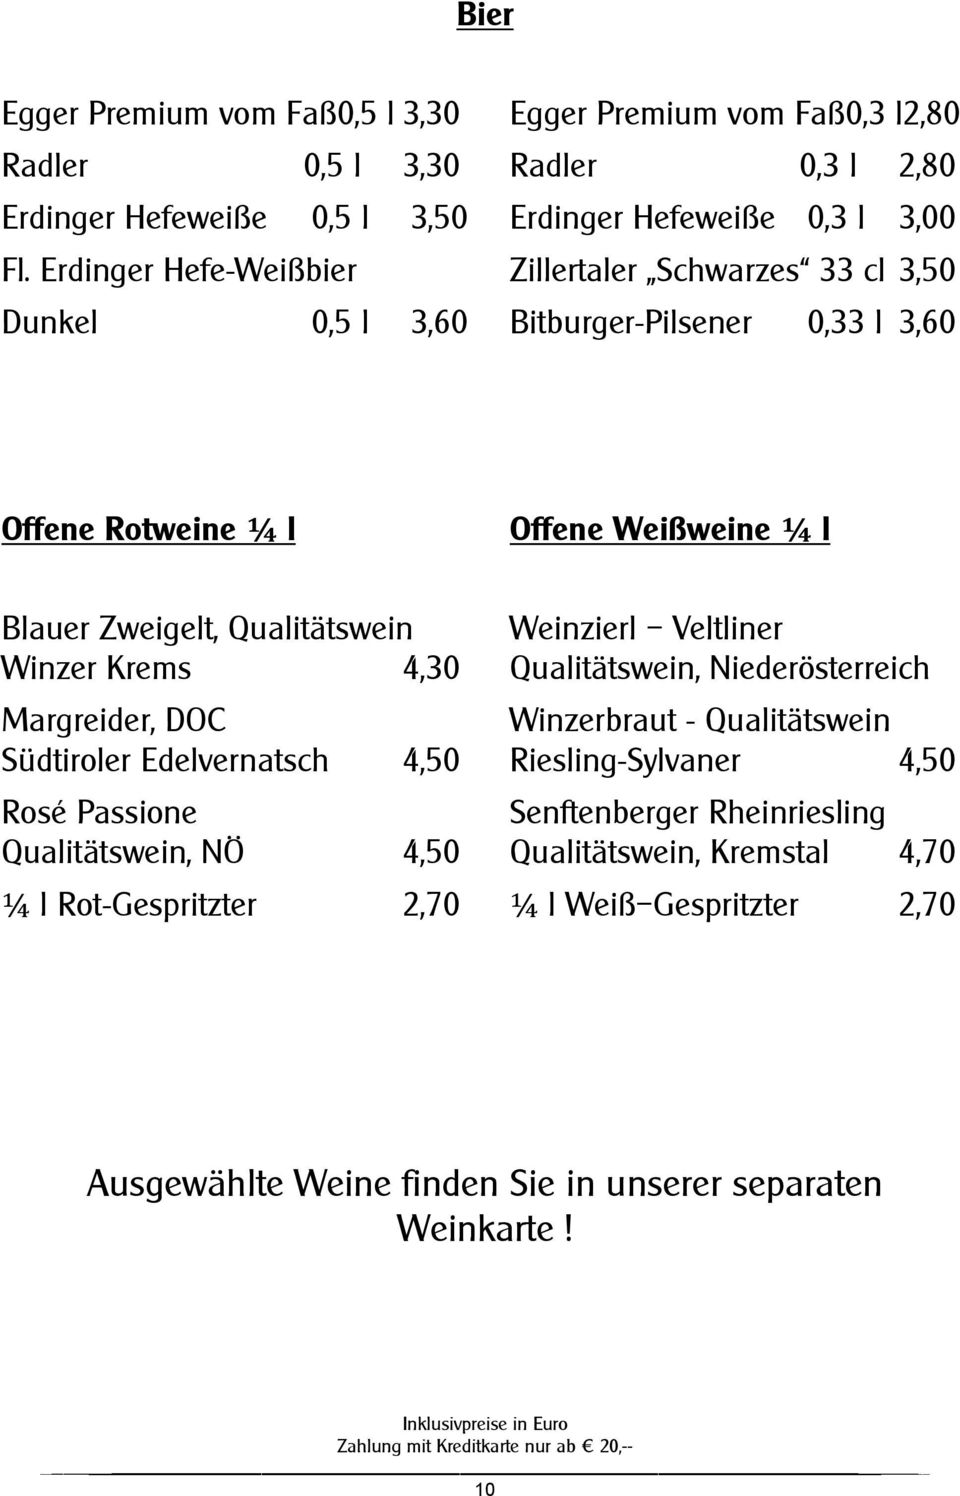 Weinzierl Veltliner Winzer Krems 4,30 Qualitätswein, Niederösterreich Margreider, DOC Winzerbraut - Qualitätswein Südtiroler Edelvernatsch 4,50 Riesling-Sylvaner 4,50 Rosé